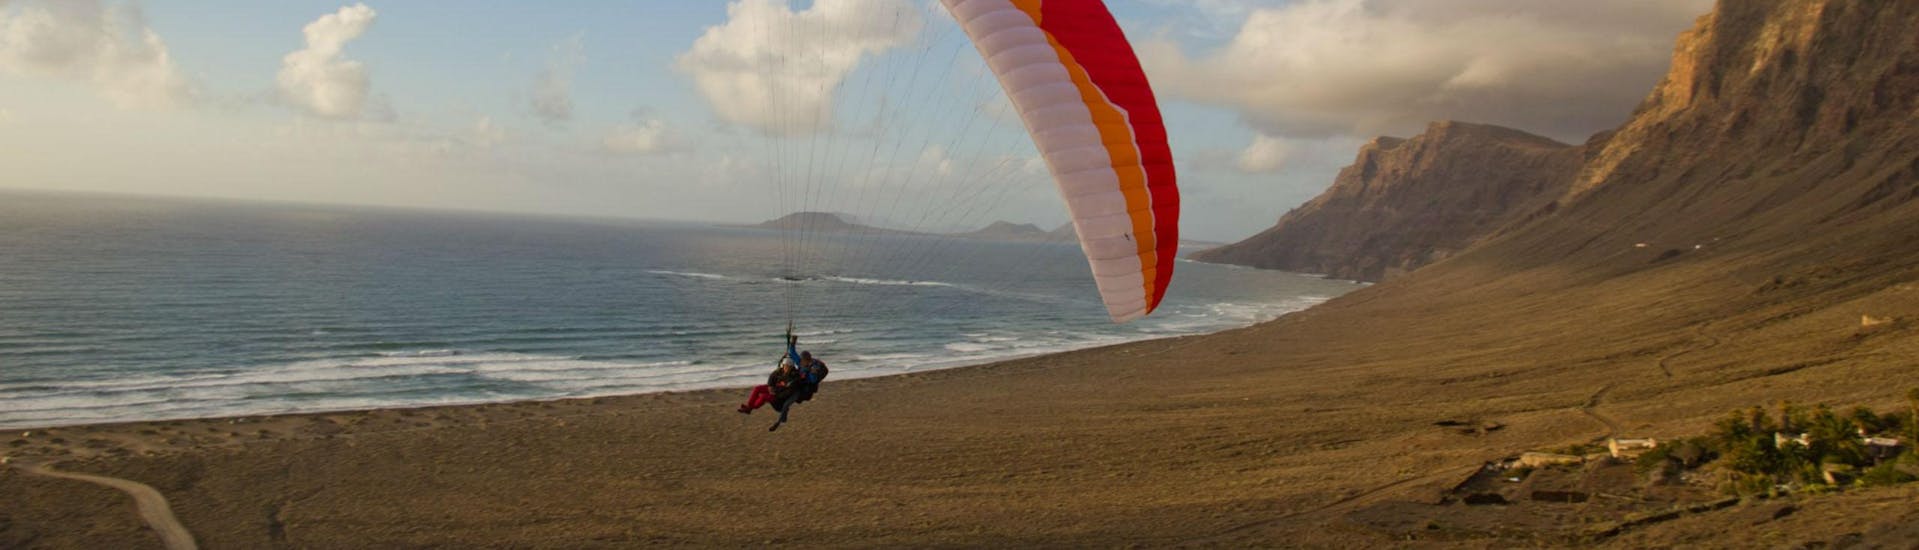 Lange afstand tandem paragliding (vanaf 8 j.) - Famara.